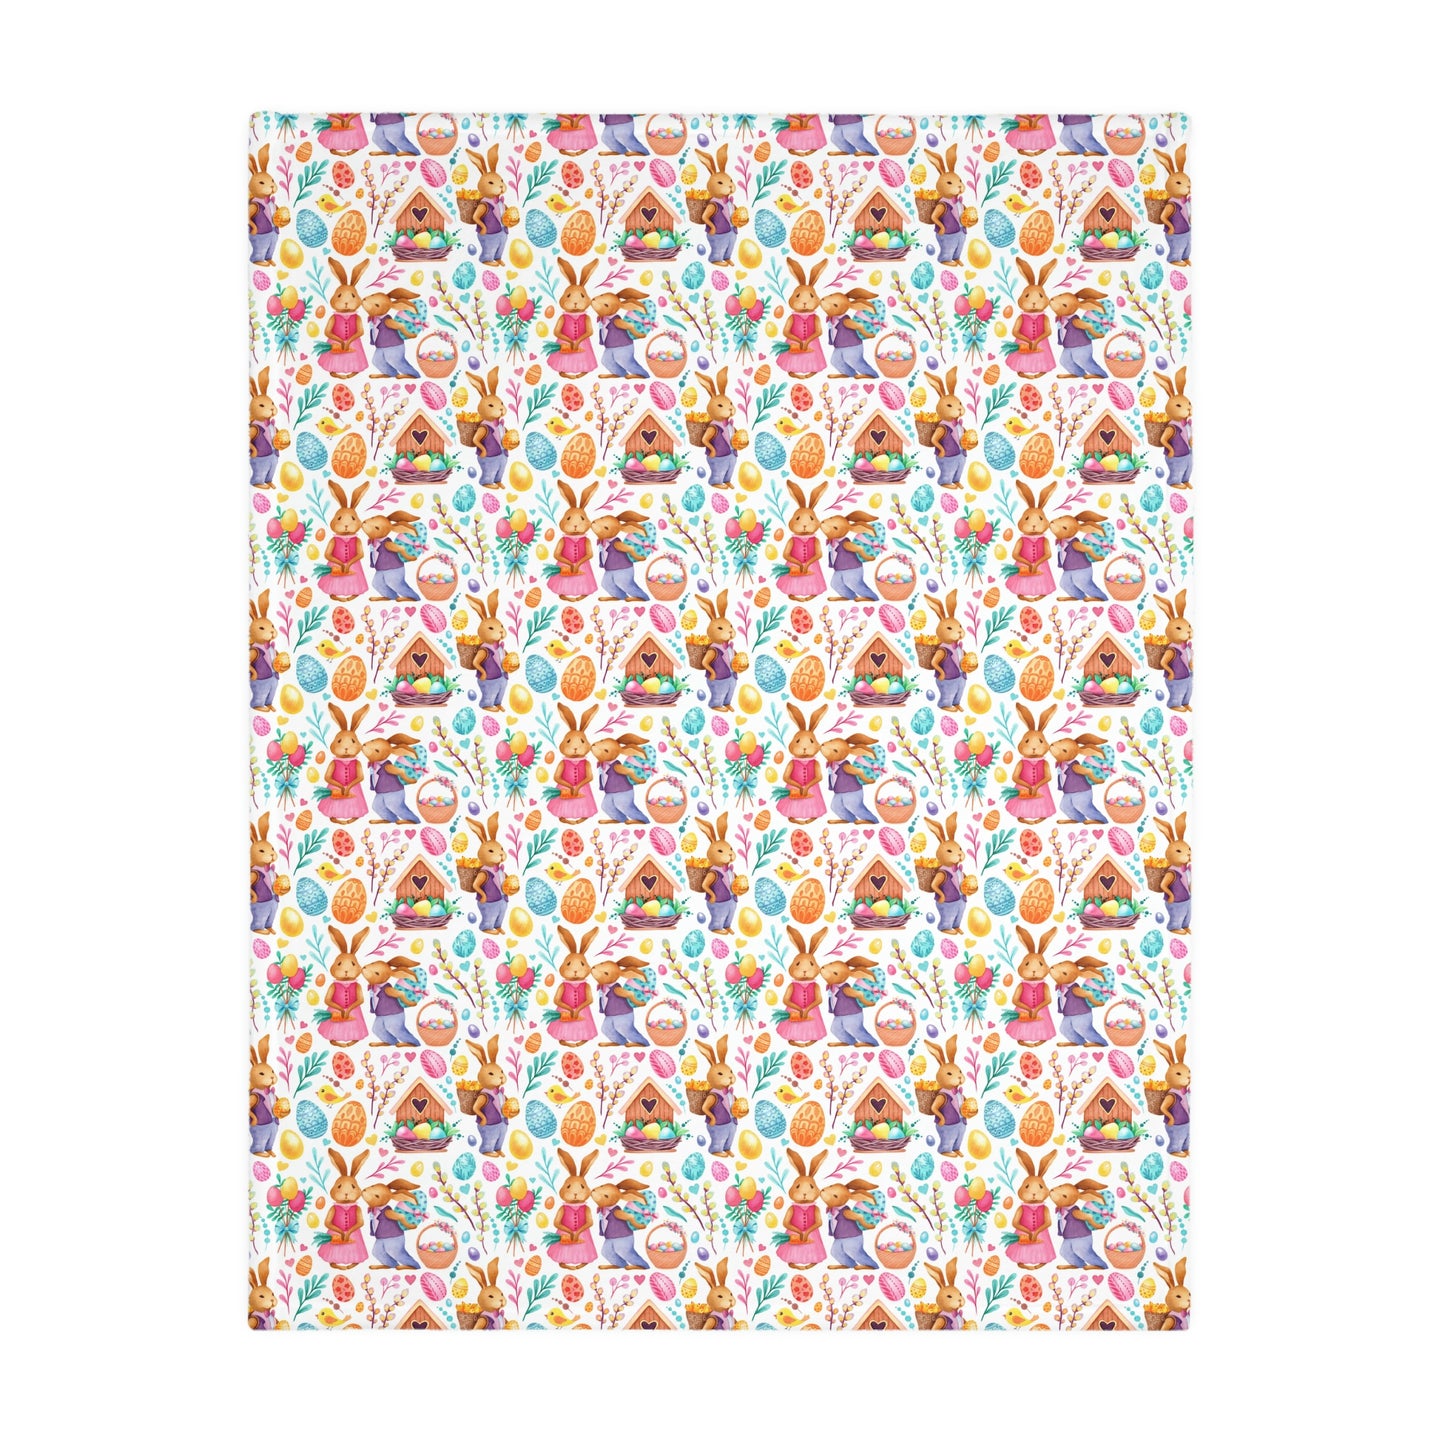 Easter Love Bunnies Velveteen Minky Blanket (Two-sided print)